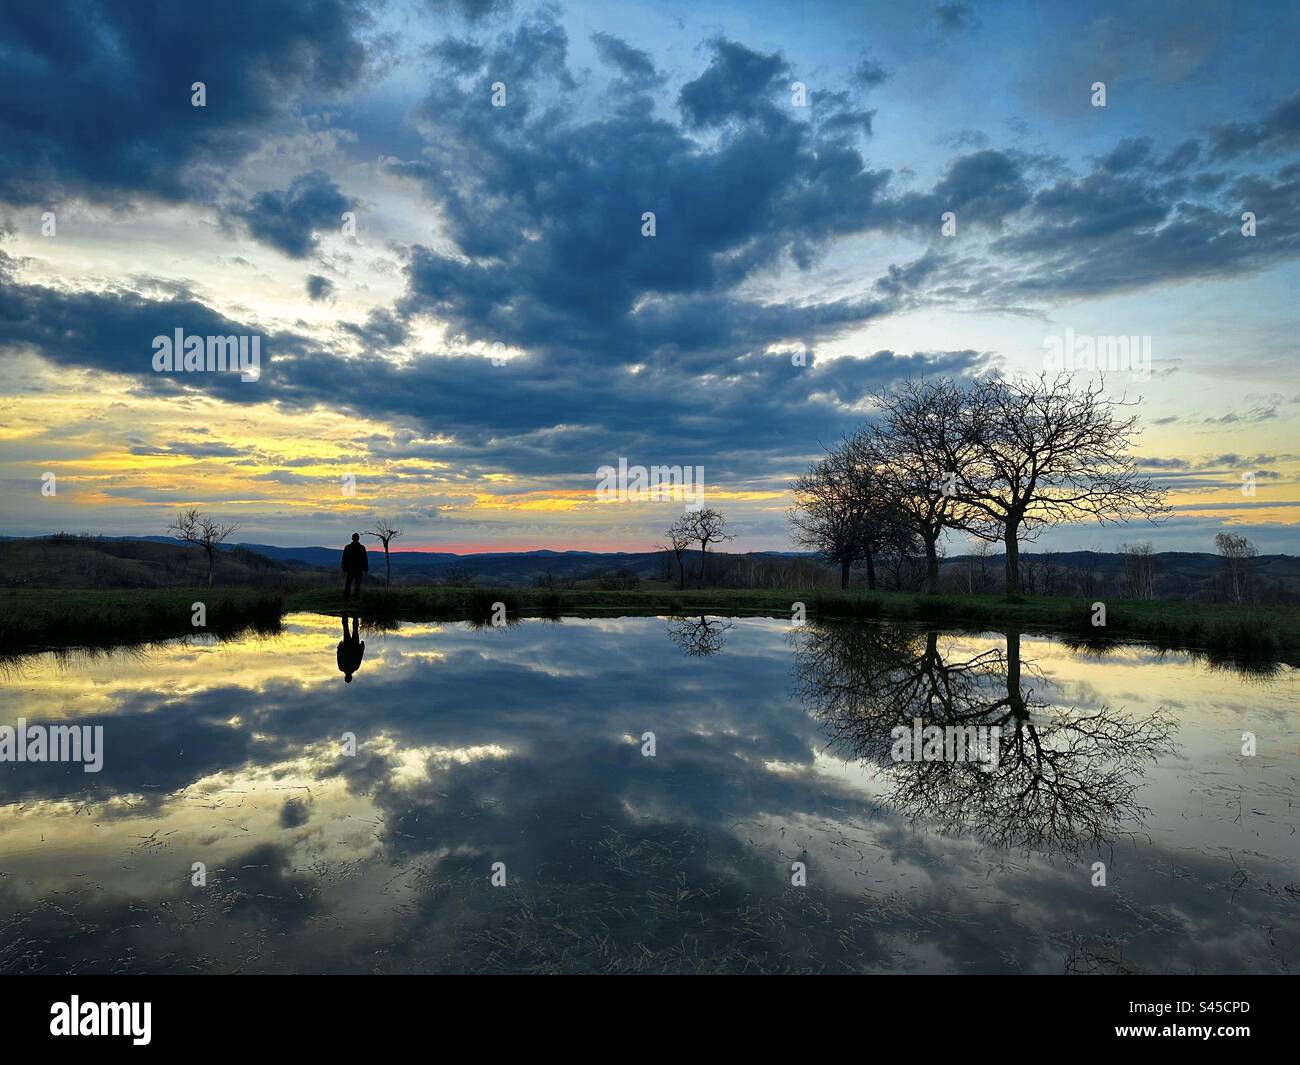 Wolken und Silhouette eines Mannes, die sich im Wasser eines kleinen Sees bei Sonnenuntergang spiegeln Stockfoto